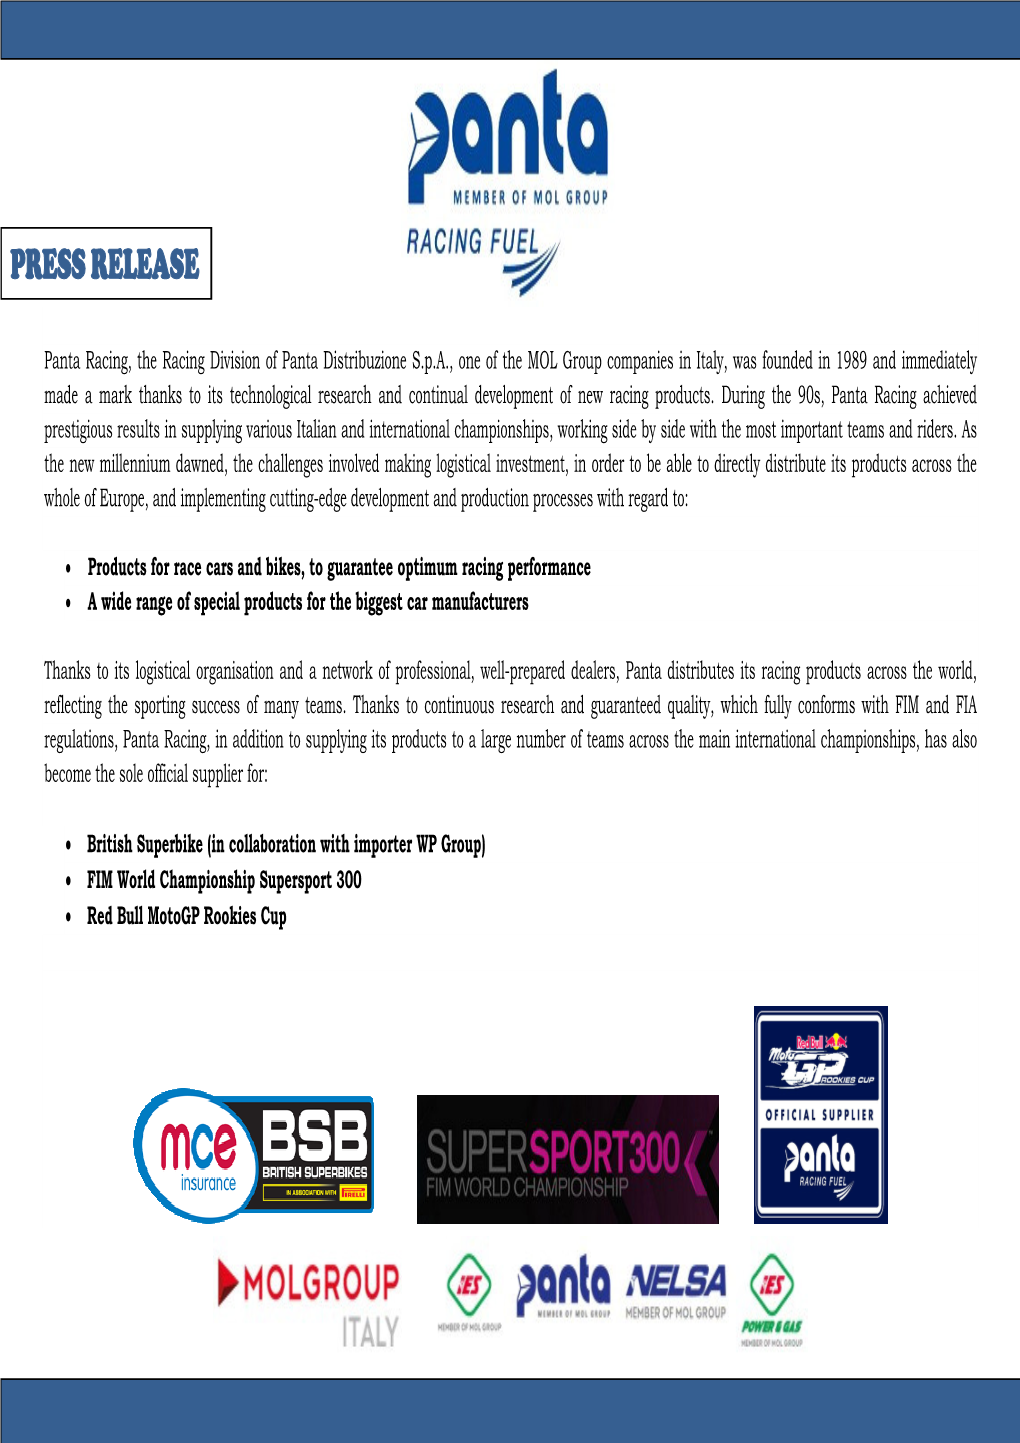 Panta Racing Fuel – Press Release